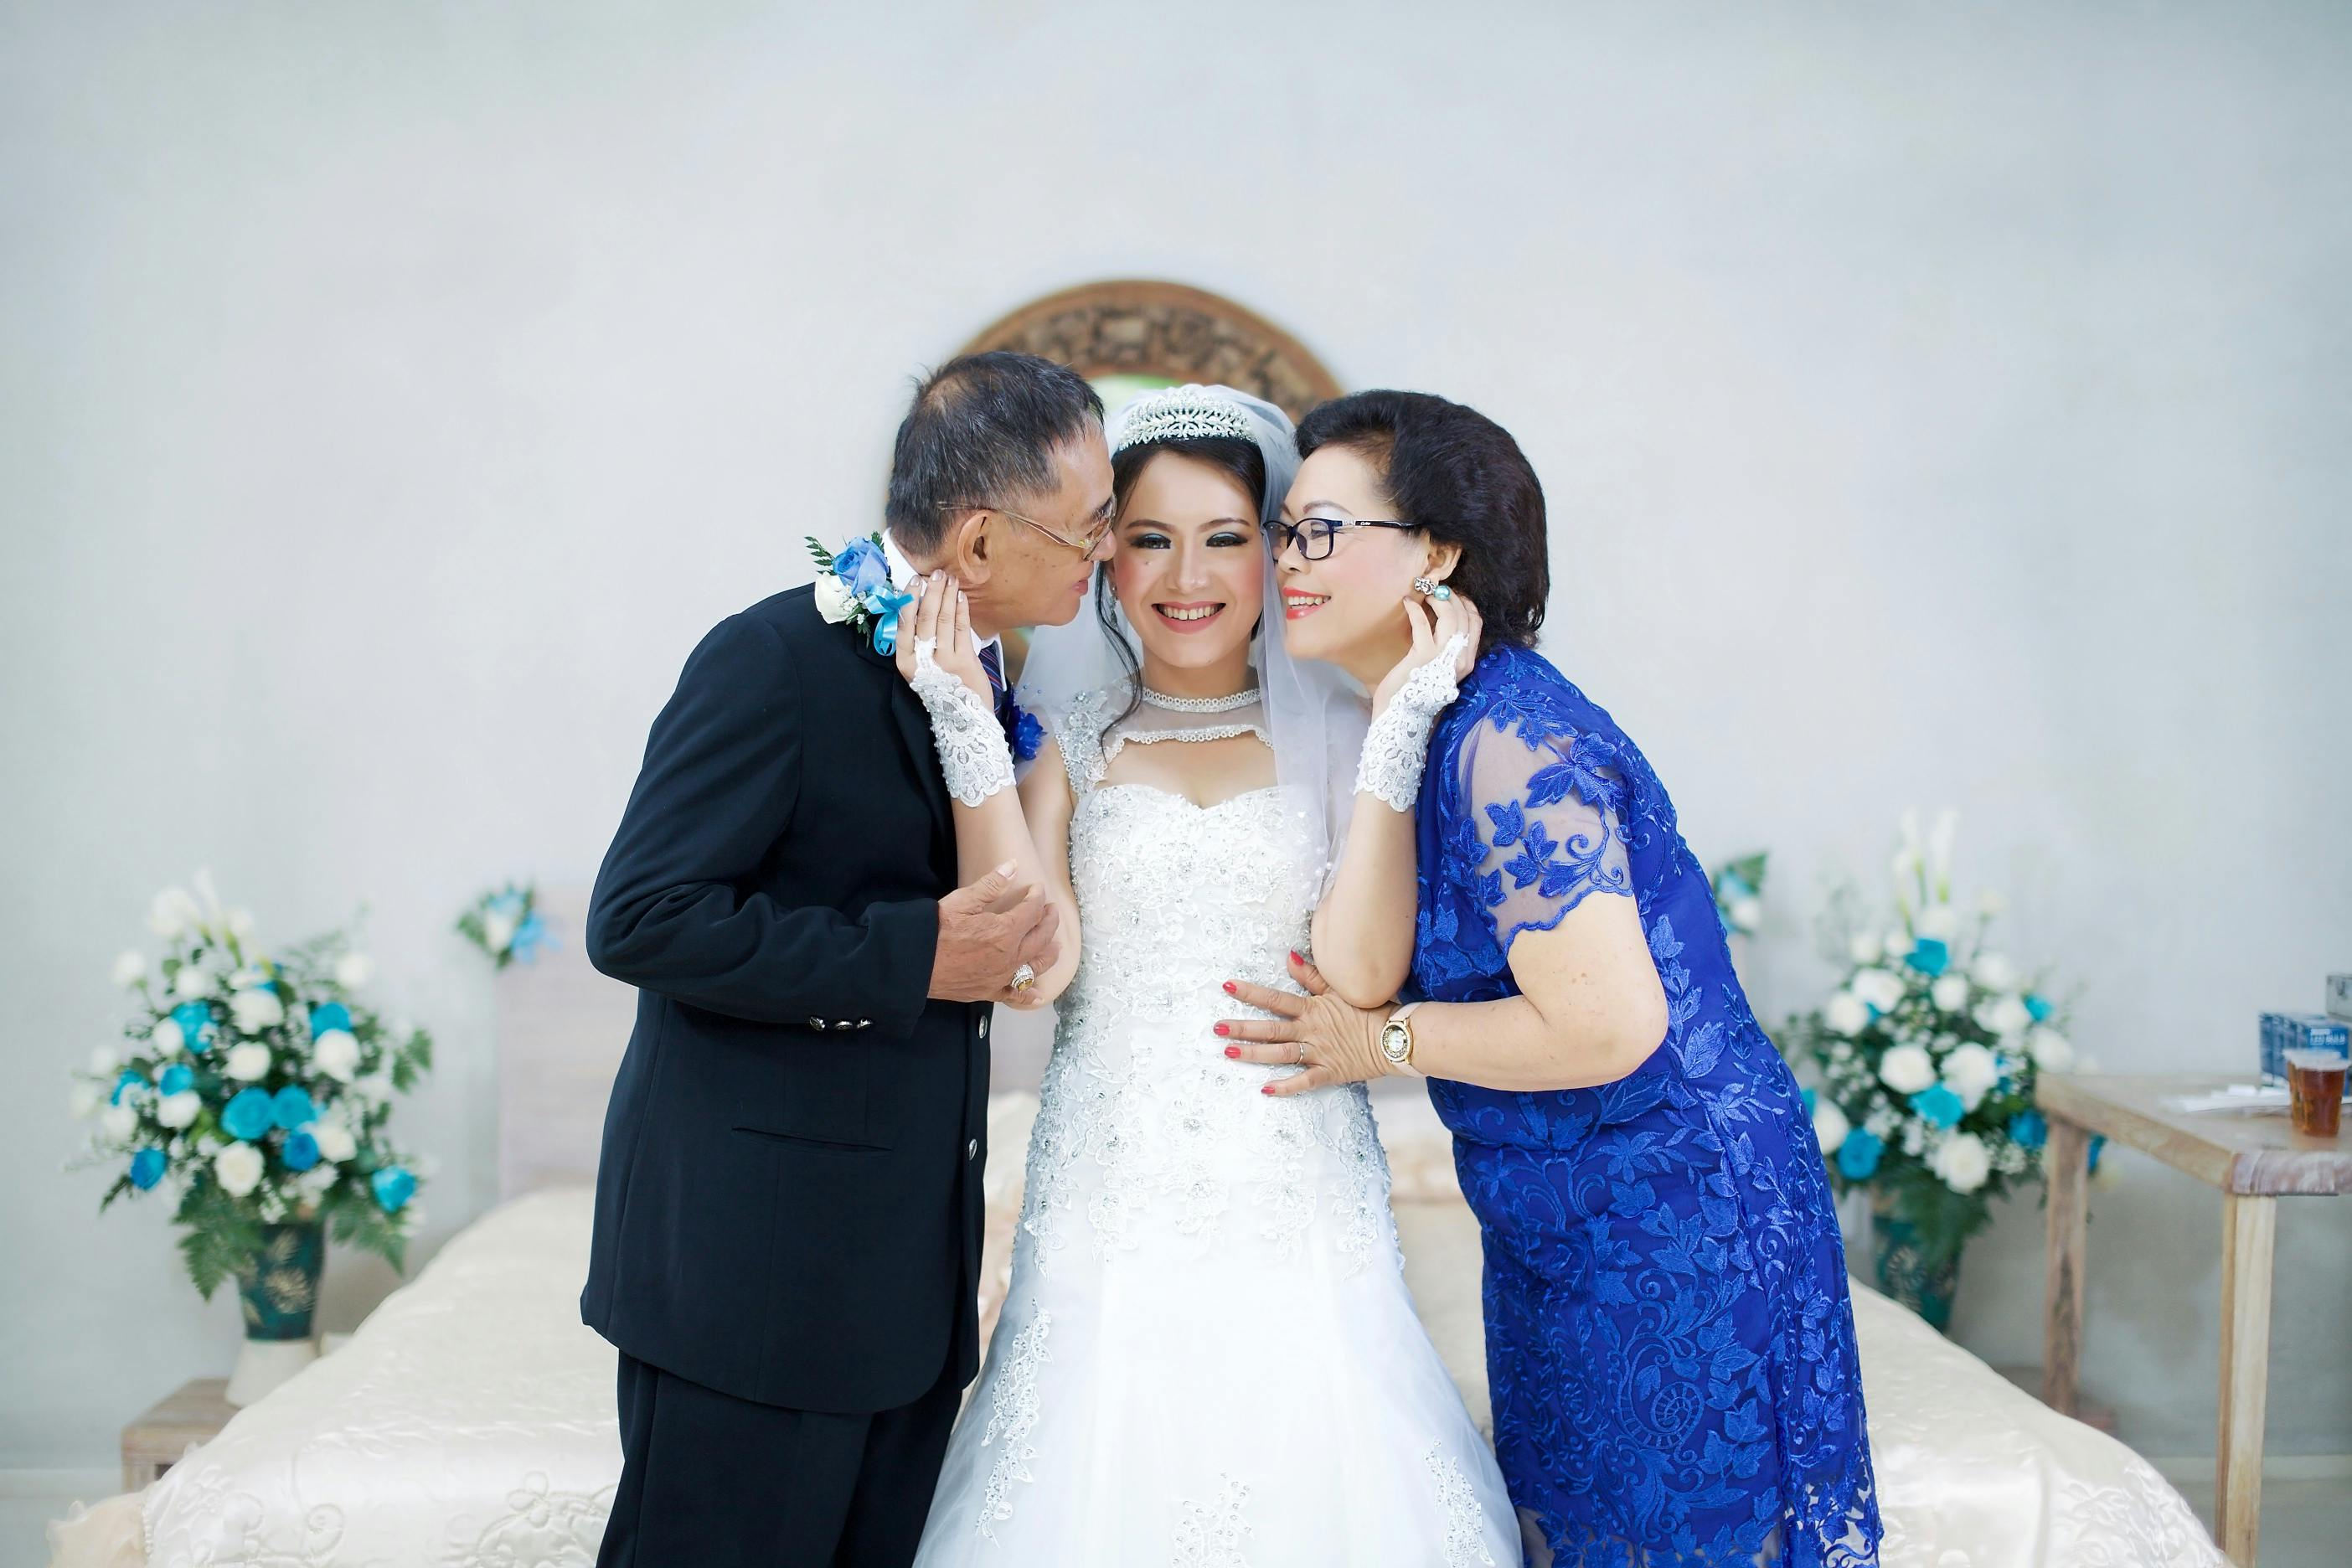 Une mariée heureuse posant avec ses parents le jour de son mariage | Source : Pexels